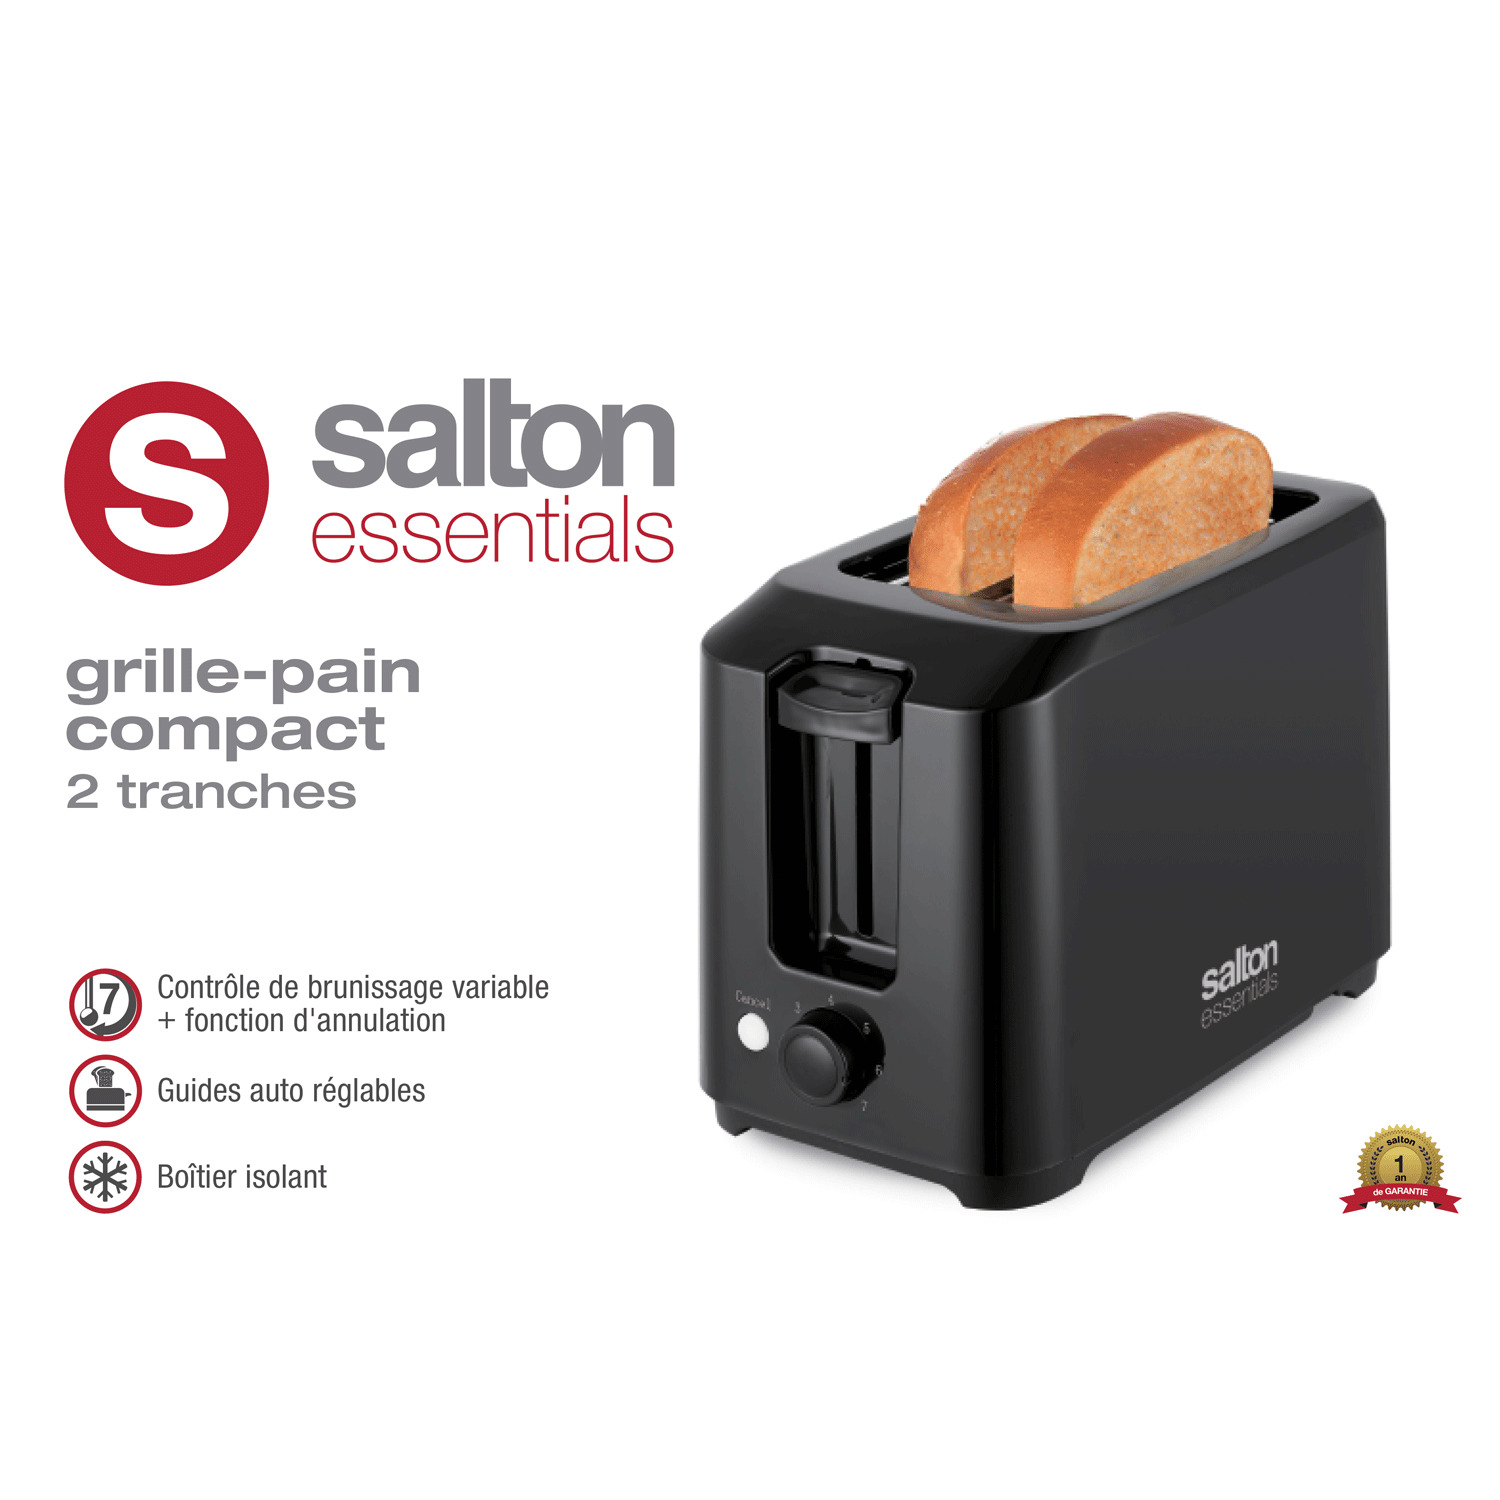 Salton - Grille-pain compact, 2 tranches, noir. Colour: black, Fr